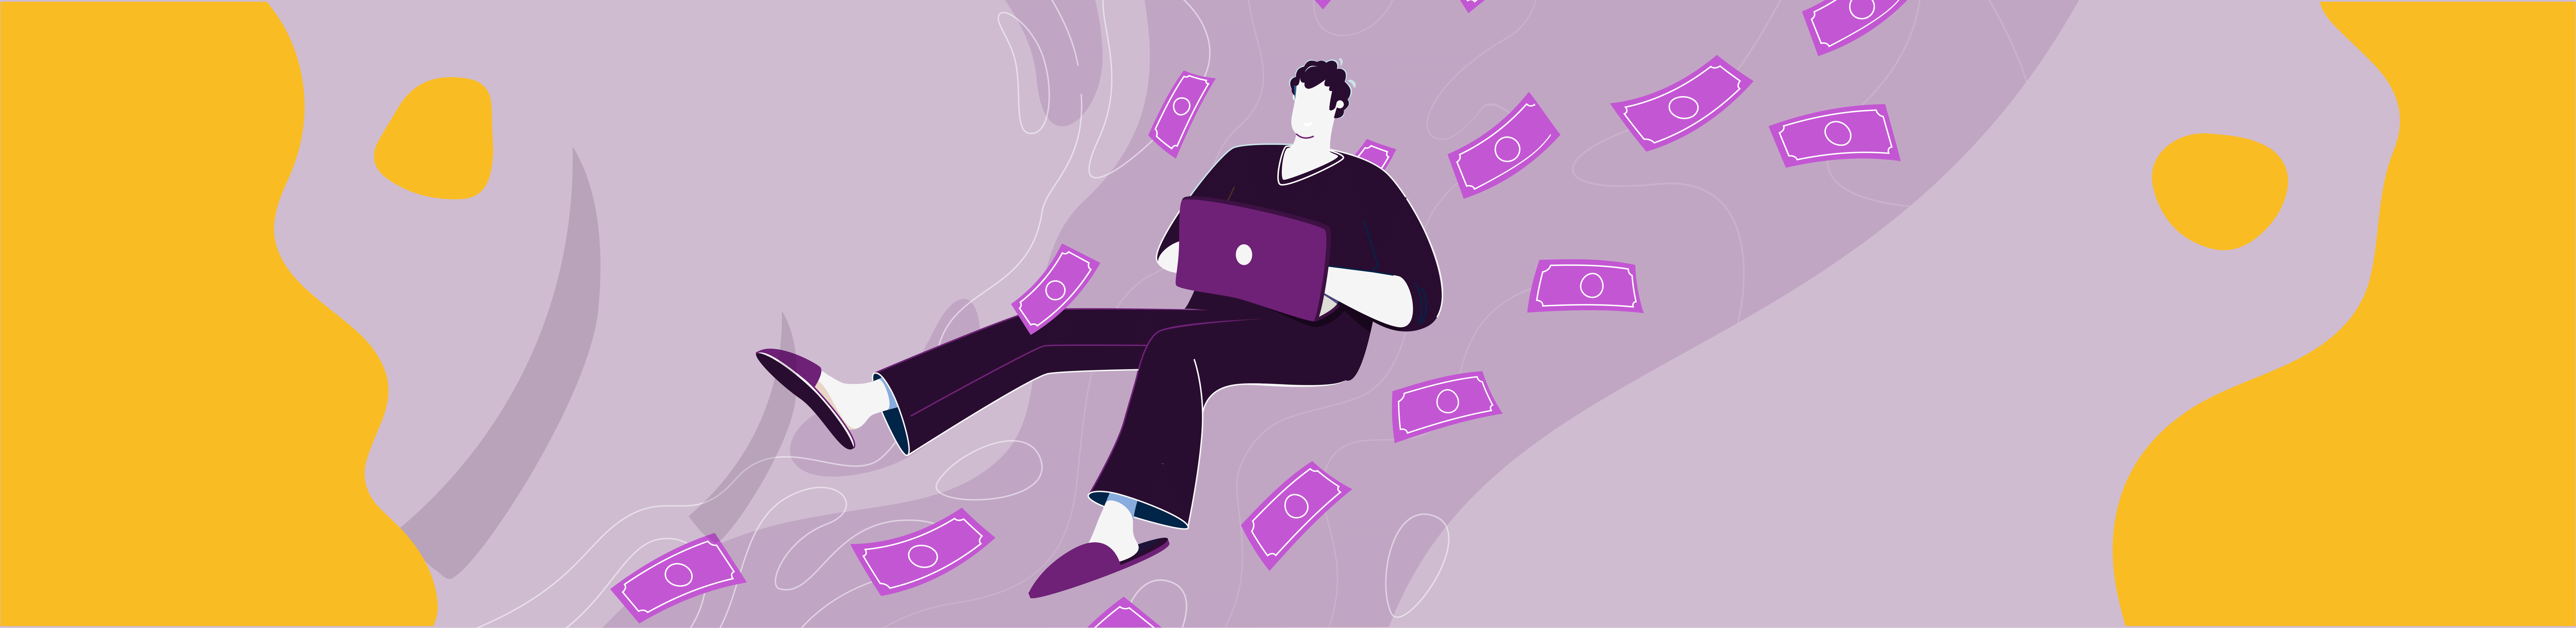 Çizim. Bir adam, laptop kullanarak çalışıyor. Ayaklarında terlikler bulunduğundan, evde olduğu anlaşılıyor. Rahat bir şekilde oturuyor gibi görünüyor ve etrafında kağıt paralar bulunuyor.